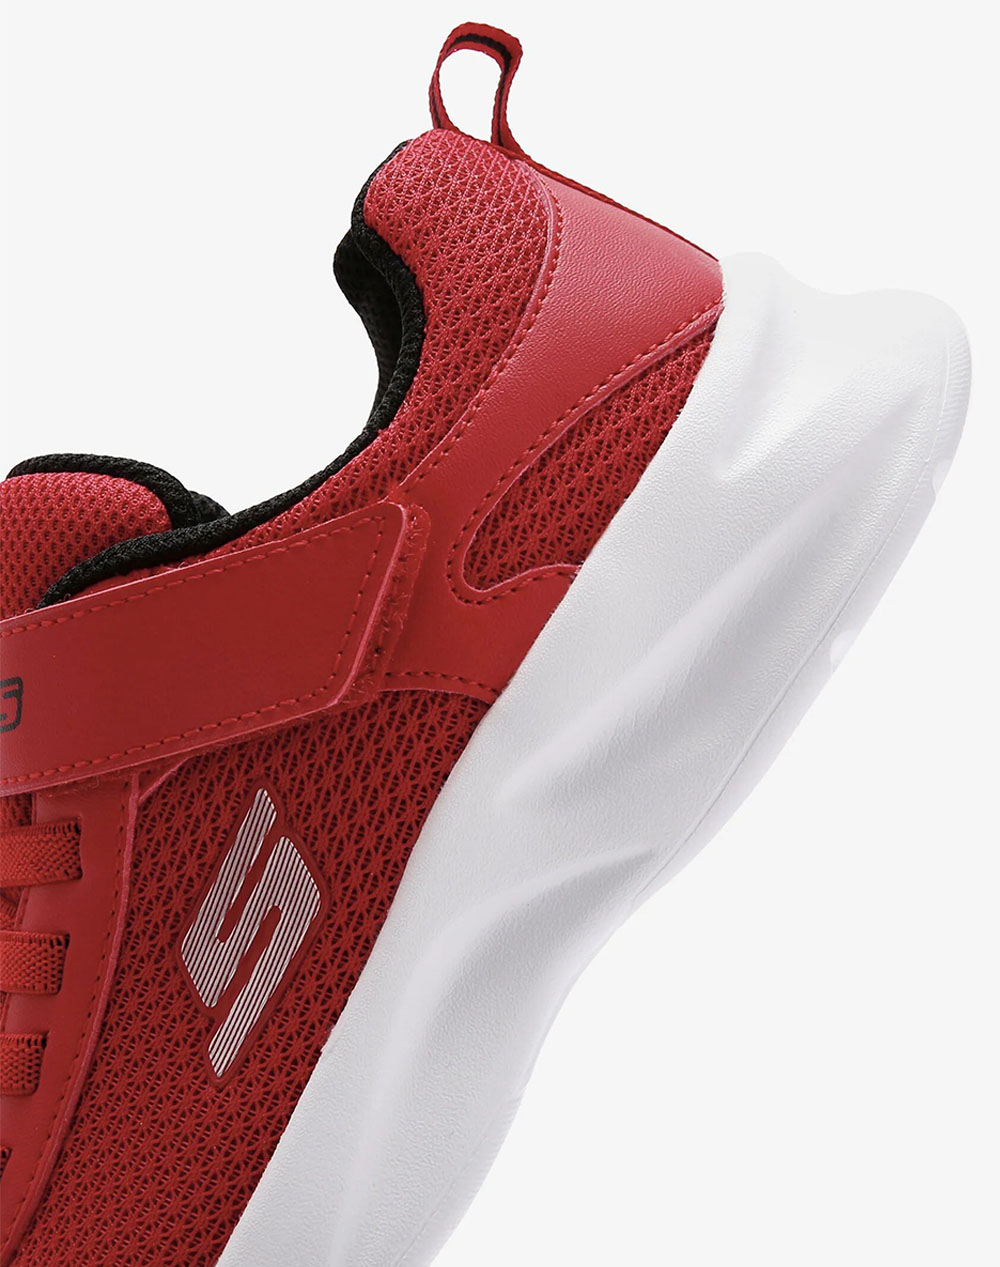 SKECHERS Lightweight Gore & Strap Sneaker